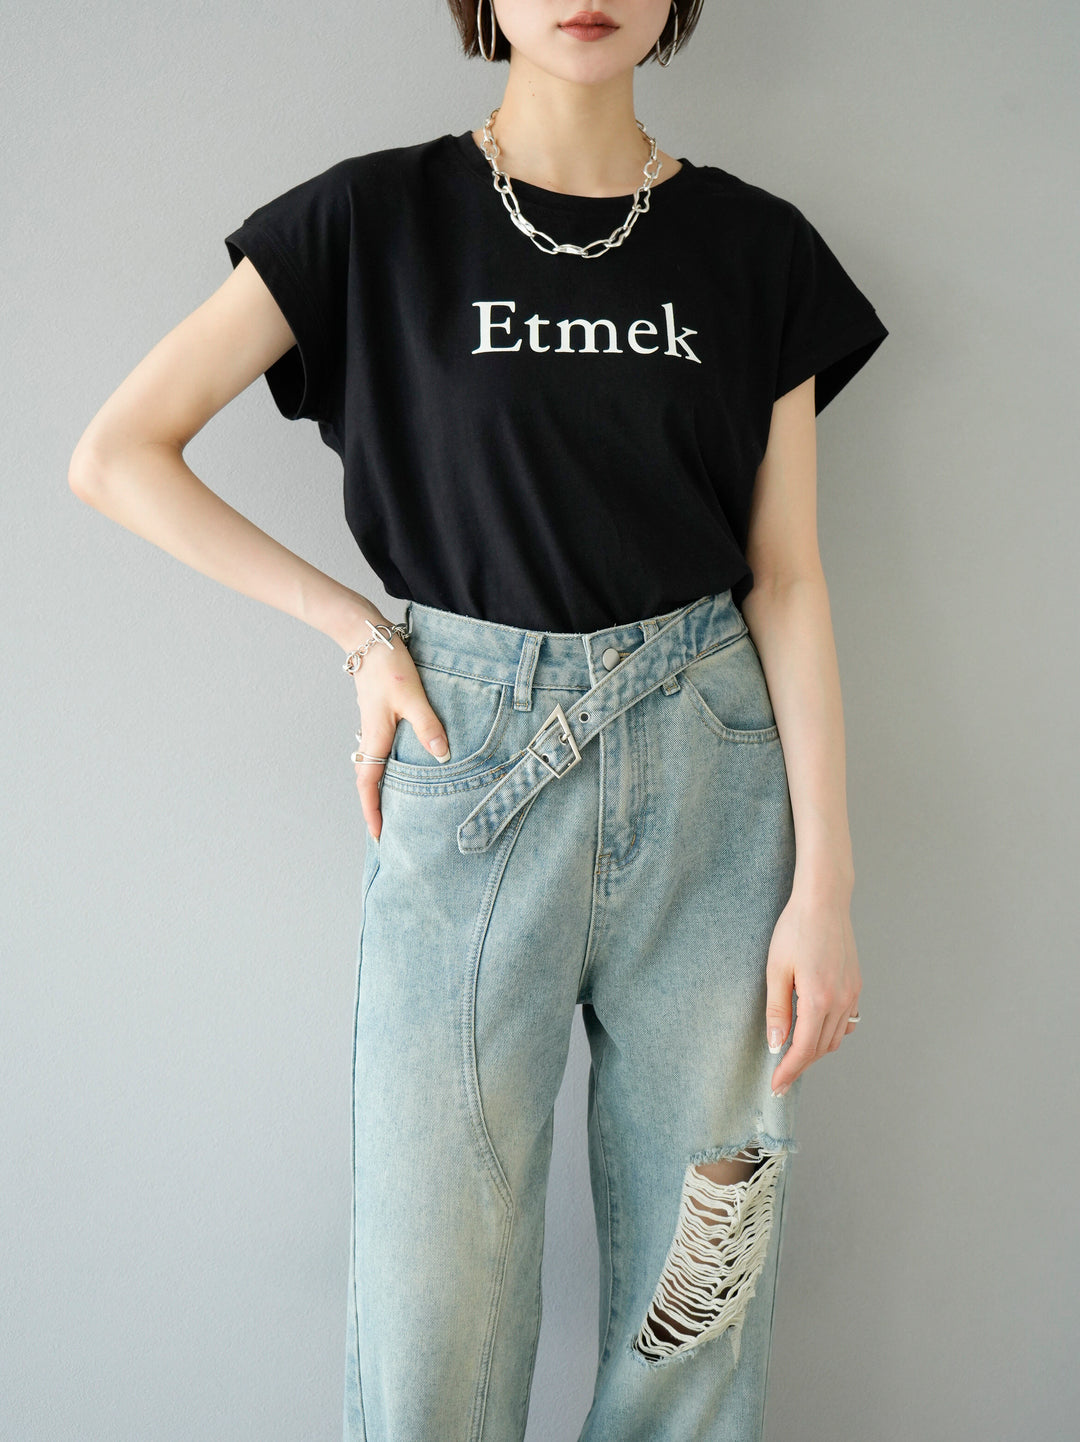 [予約]'Etmek'プリントフレンチスリーブTシャツ/ブラック